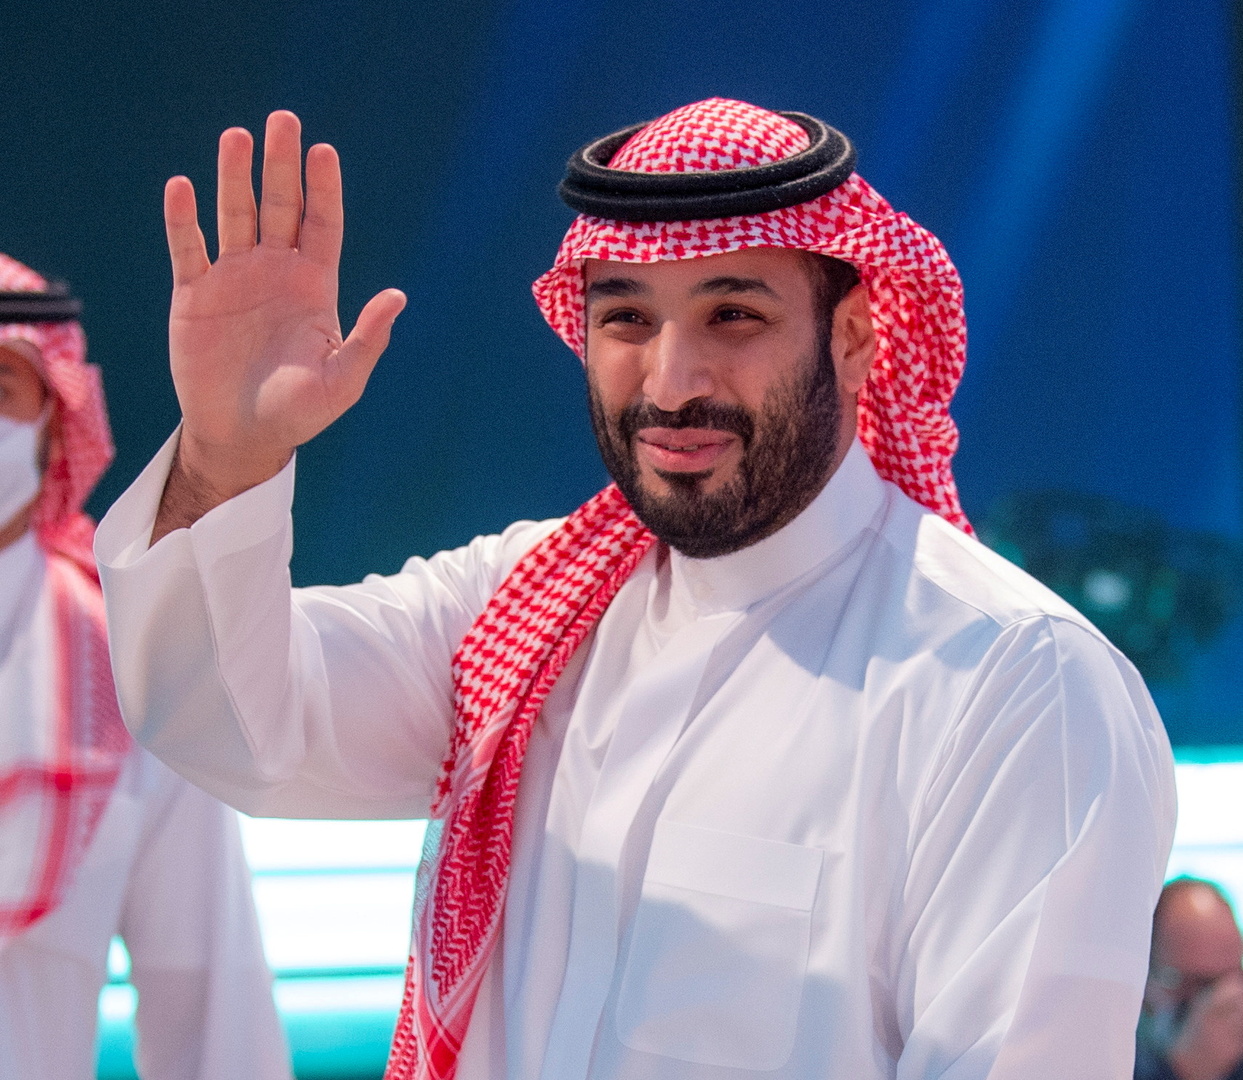 ولي العهد السعودي يبدأ زيارة خارج المملكة هي الأولى من نوعها